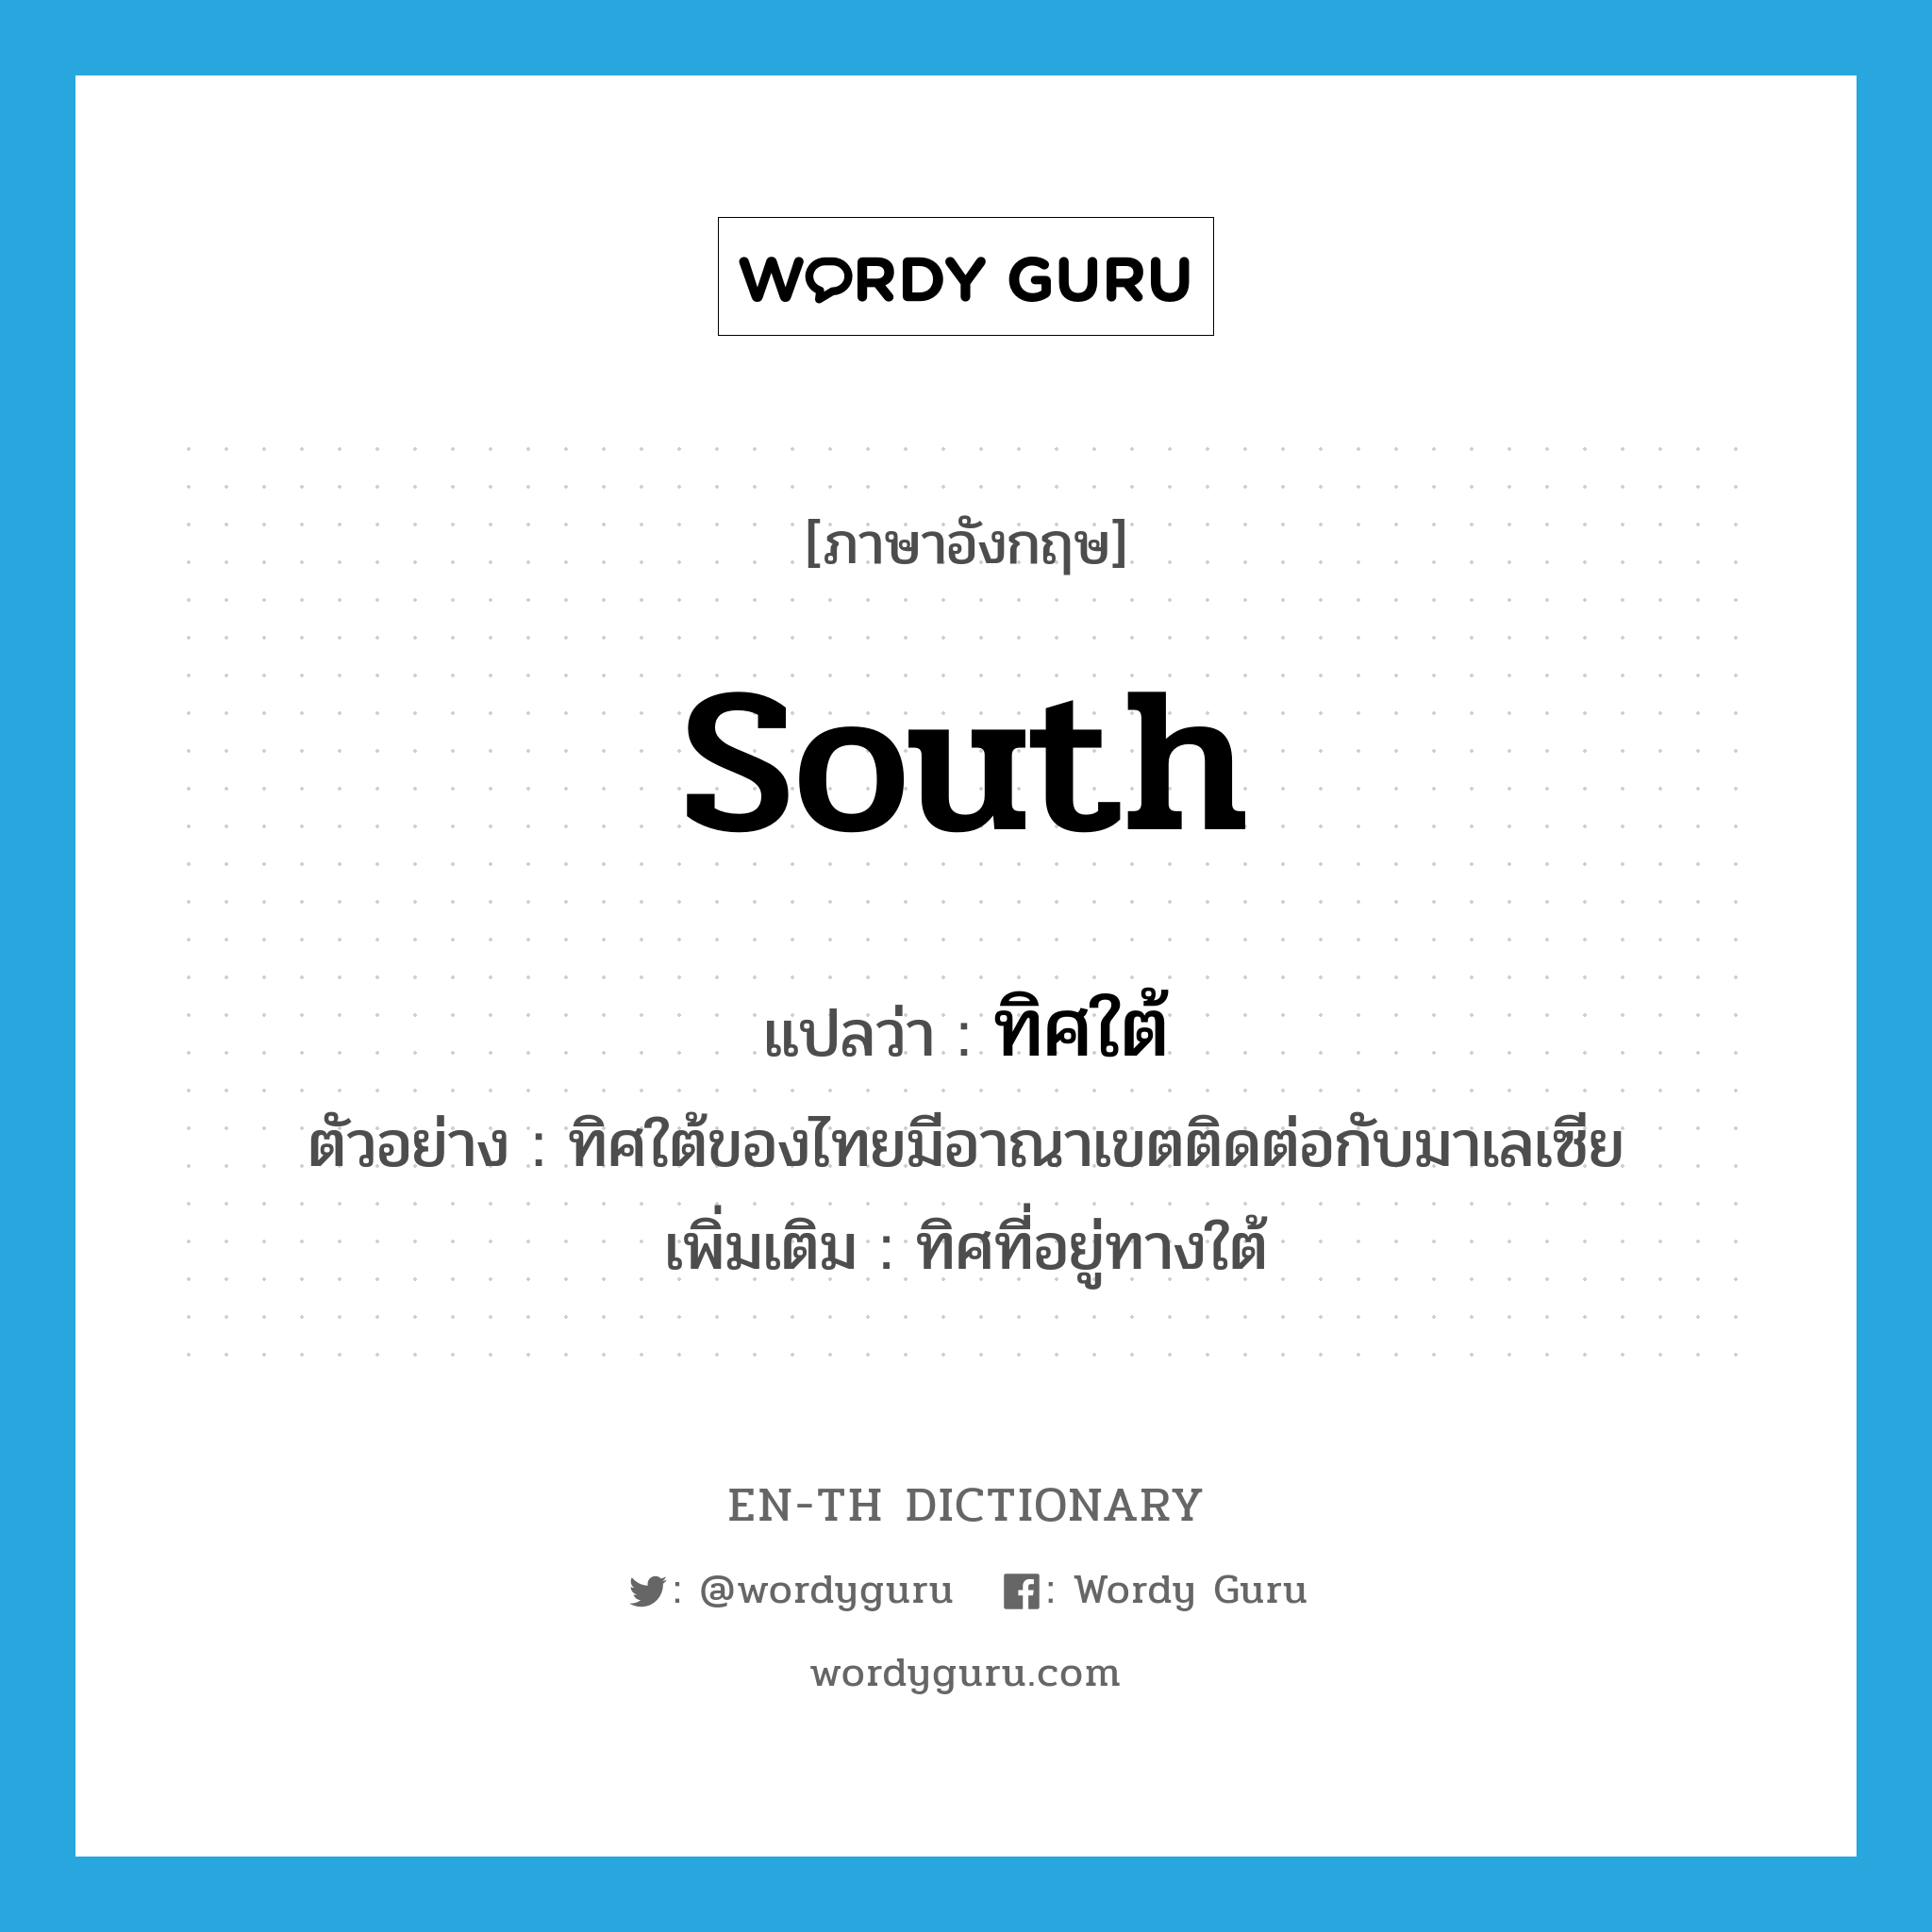 South แปลว่า?, คำศัพท์ภาษาอังกฤษ South แปลว่า ทิศใต้ ประเภท N ตัวอย่าง ทิศใต้ของไทยมีอาณาเขตติดต่อกับมาเลเซีย เพิ่มเติม ทิศที่อยู่ทางใต้ หมวด N